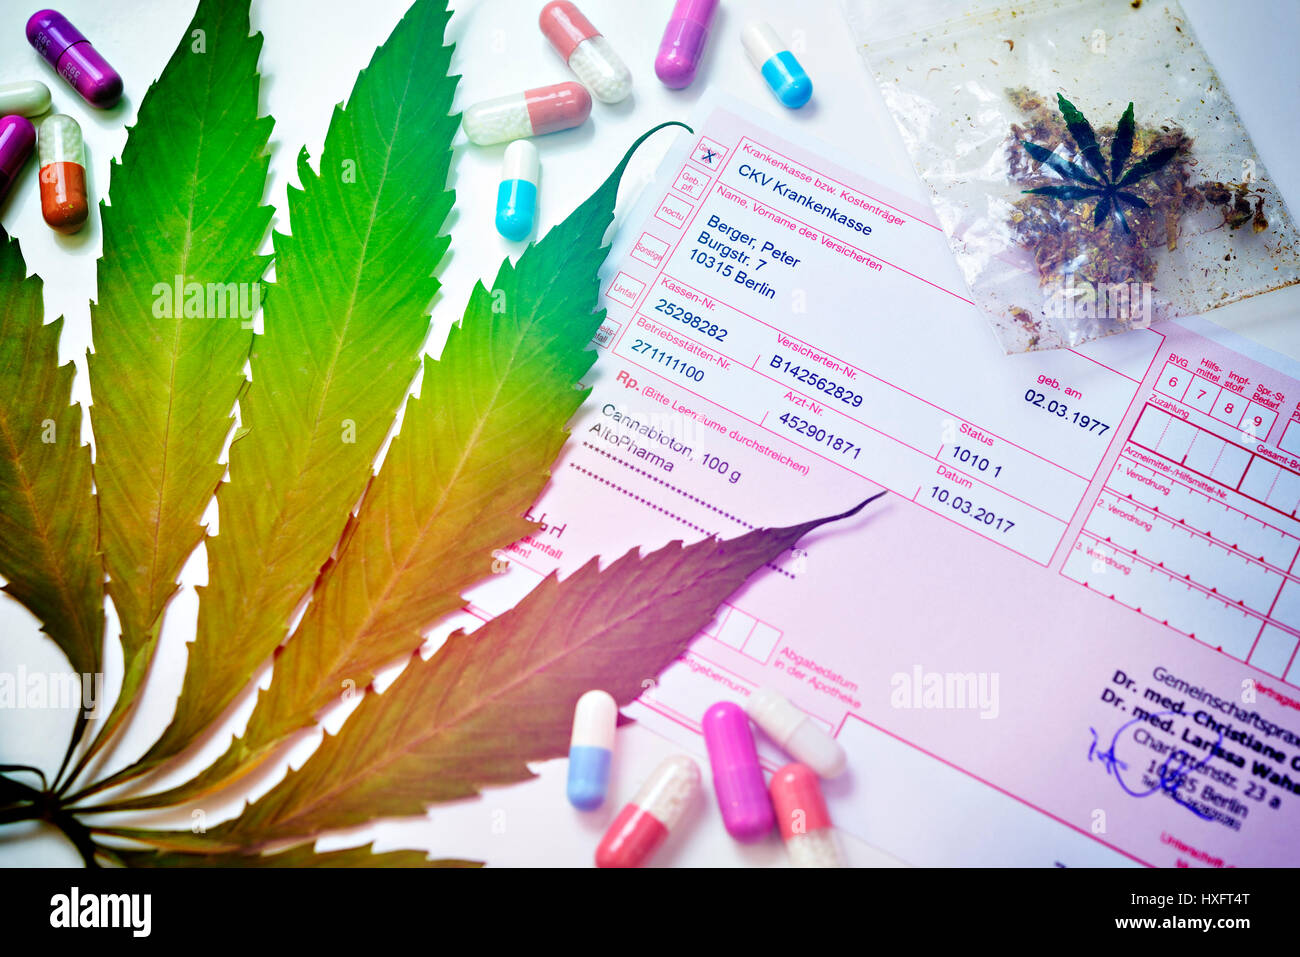 Feuille de chanvre, cannabis et médicaux, recette, Hanfblatt rztliches¤Ã und Cannabis Rezept Banque D'Images